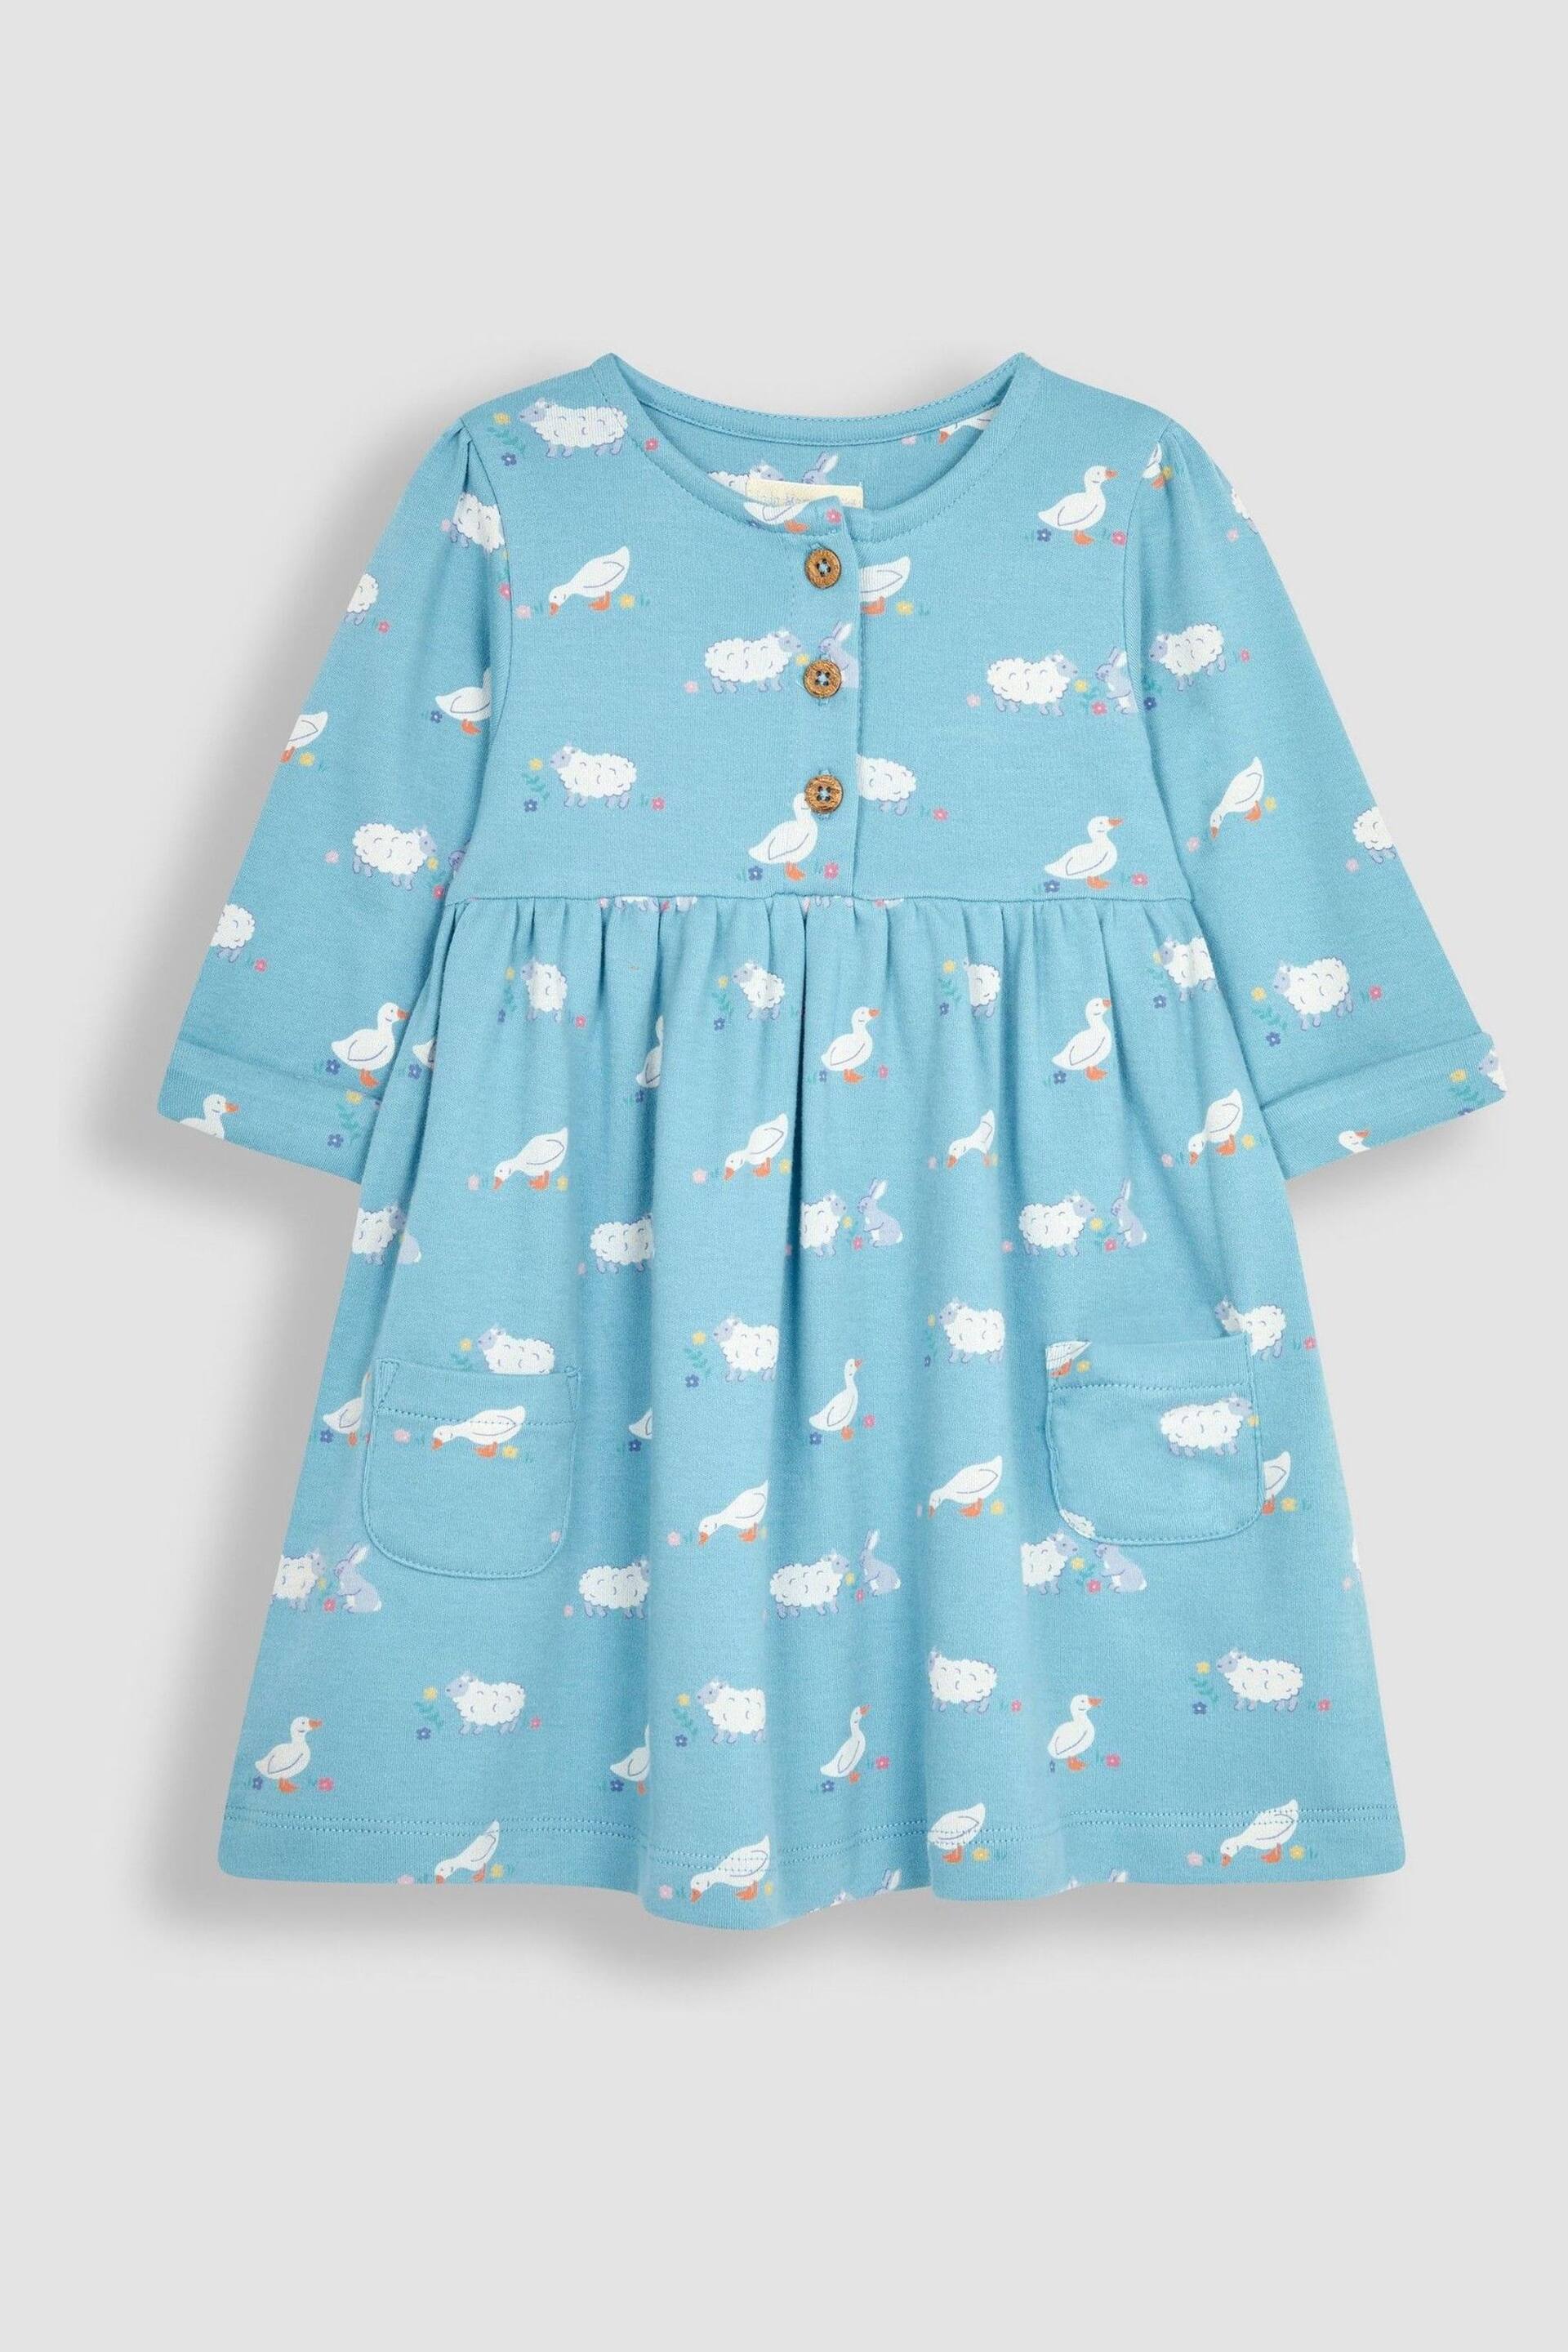 JoJo Maman Bébé Blue Duck & Friends Button Front Pet In Pocket Long Sleeve Jersey Dress - Image 2 of 3